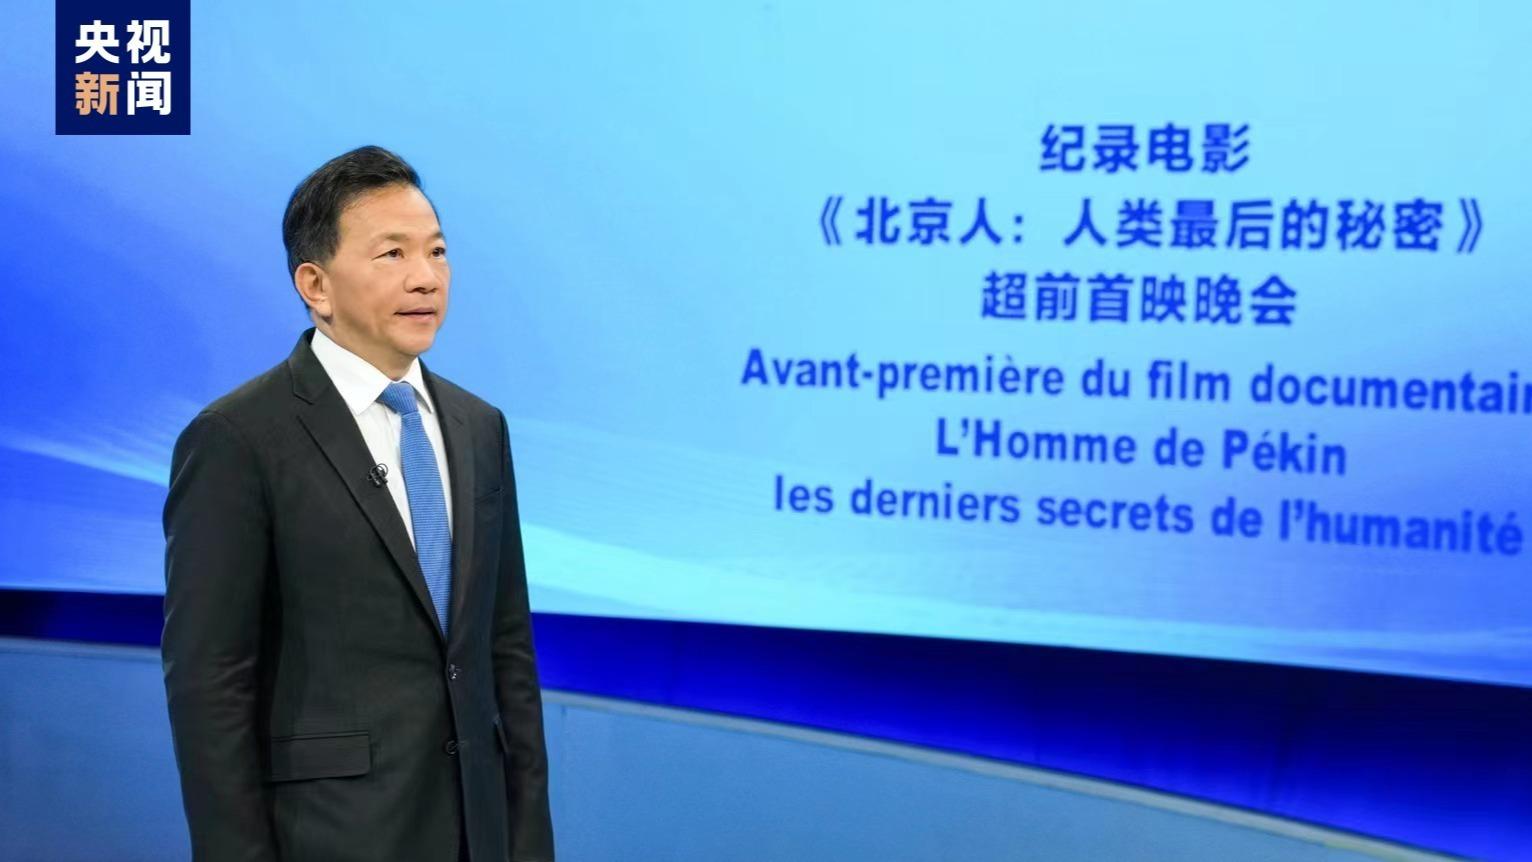 برگزاری اکران اولیه فیلم مستند چینی-فرانسوی «مرد پکنی: آخرین راز بشریت» در مقر یونسکوا